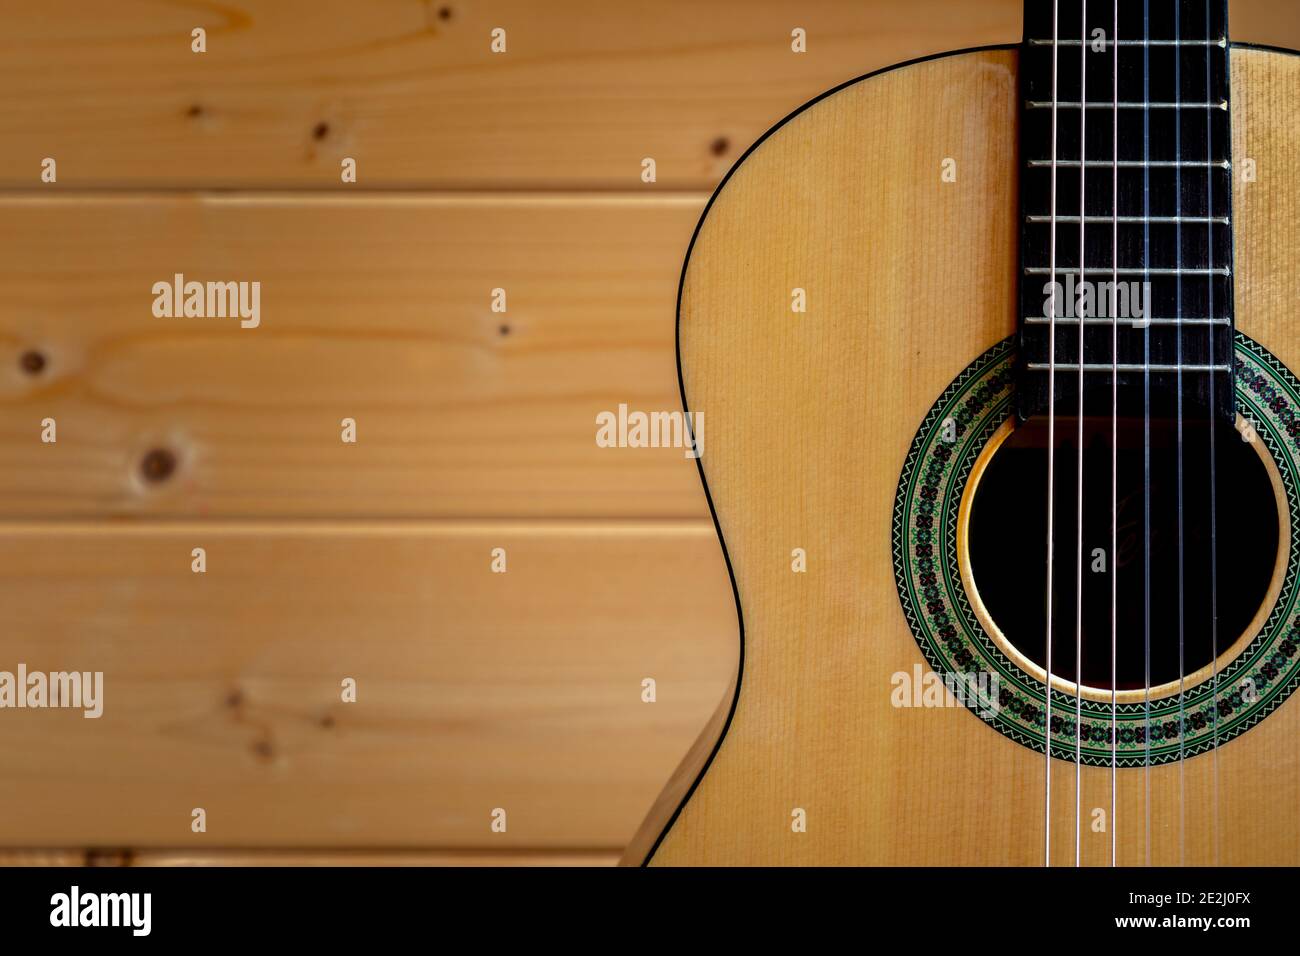 Royaume-Uni. 13 janvier 2021. Une guitare classique à six cordes (ou espagnole) placée contre un mur en bois de pin. Photographe : Brian Duffy Banque D'Images